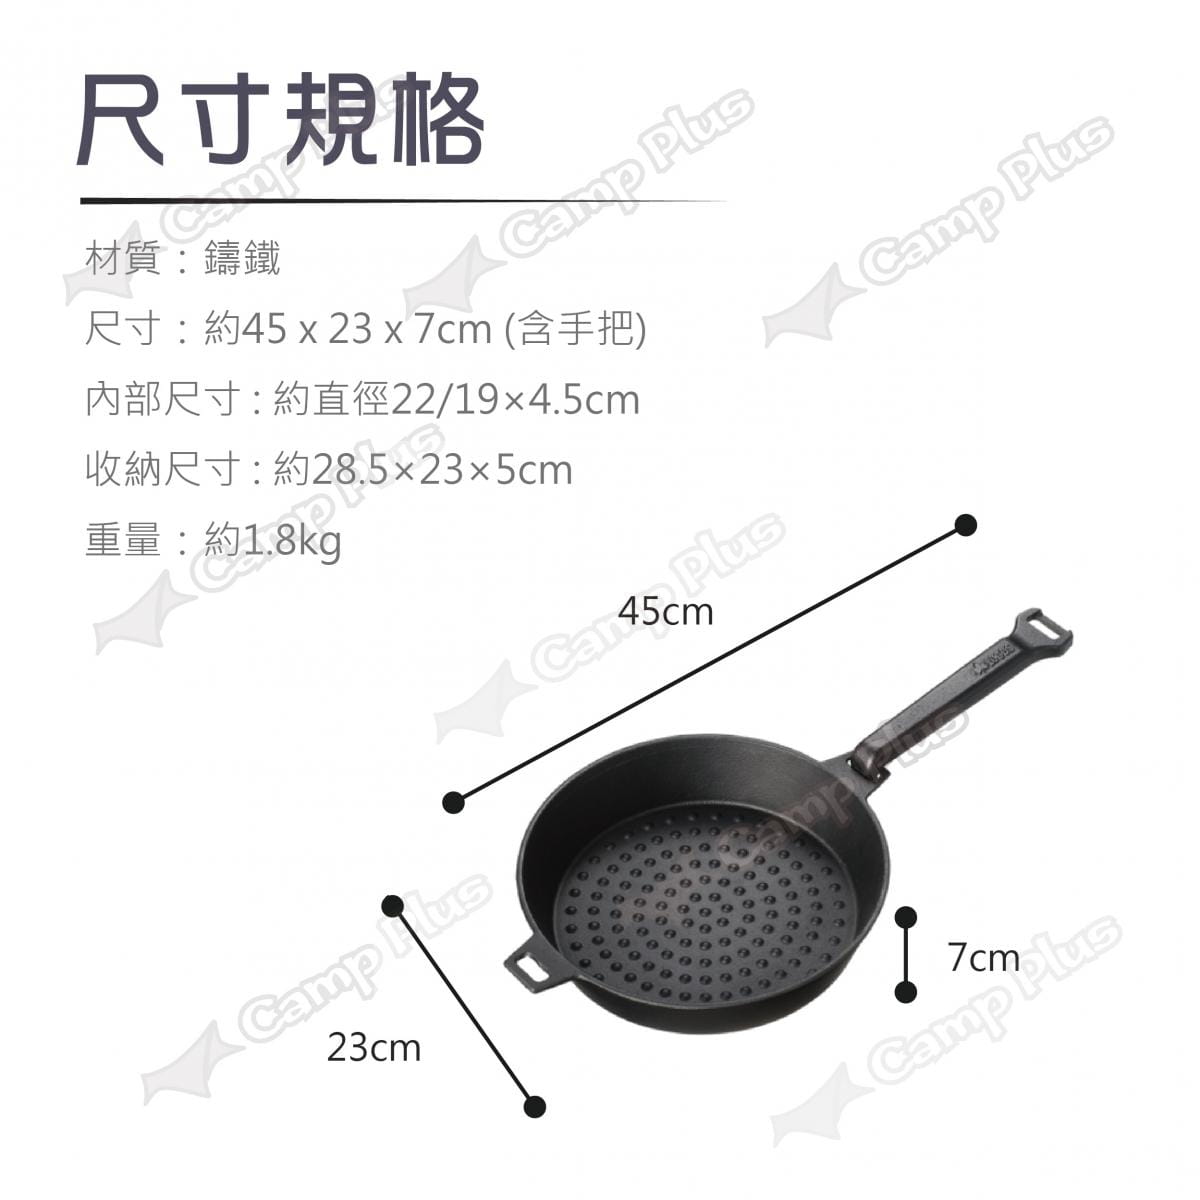 【日本LOGOS】 可合體鑄鐵煎鍋M(22cm)_LG81062235 (悠遊戶外) 5